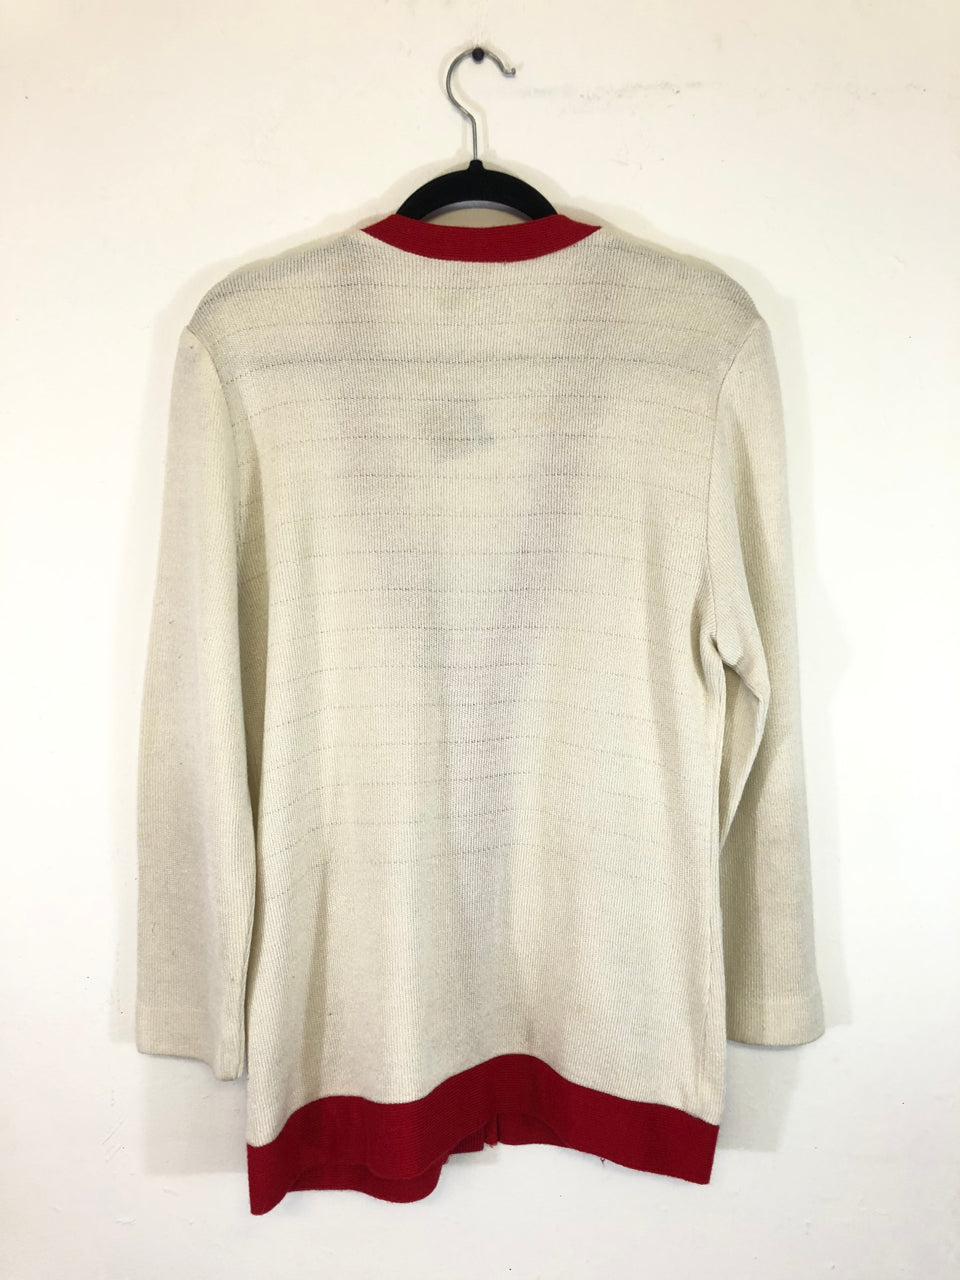 Leslie Fay Sportswear Sweater Cardigan